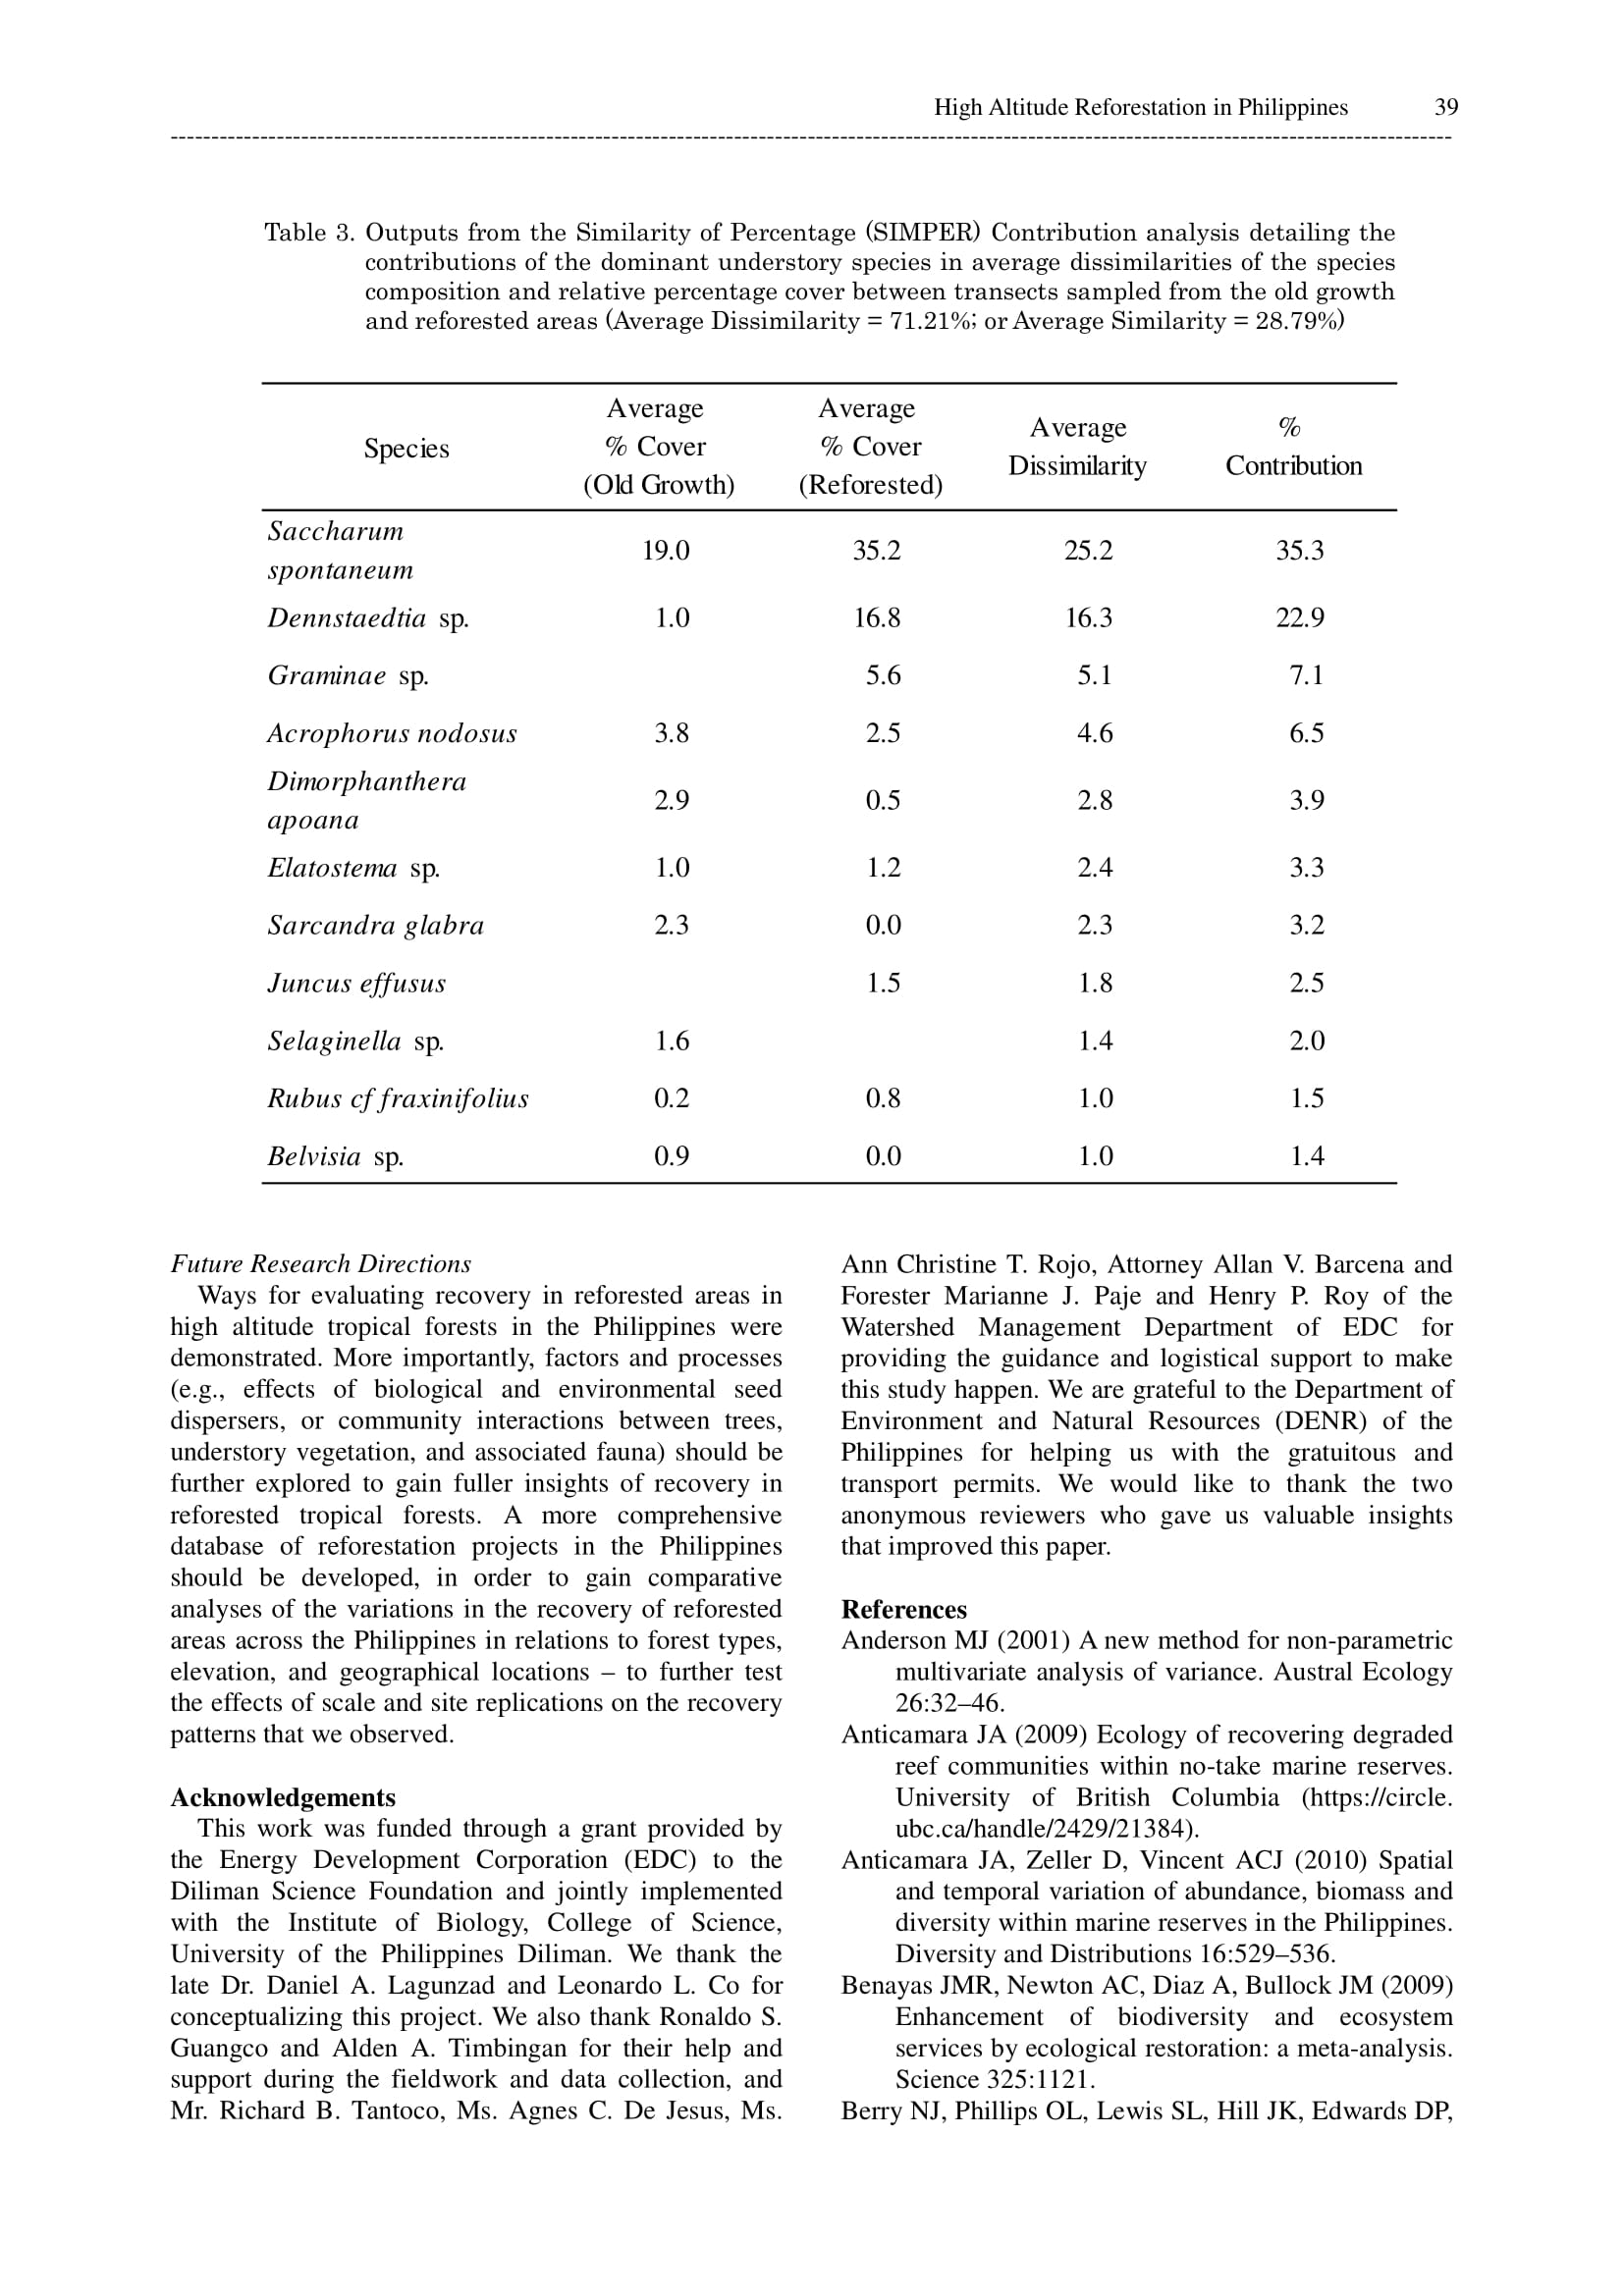 Anticamara et al. (2012)-10